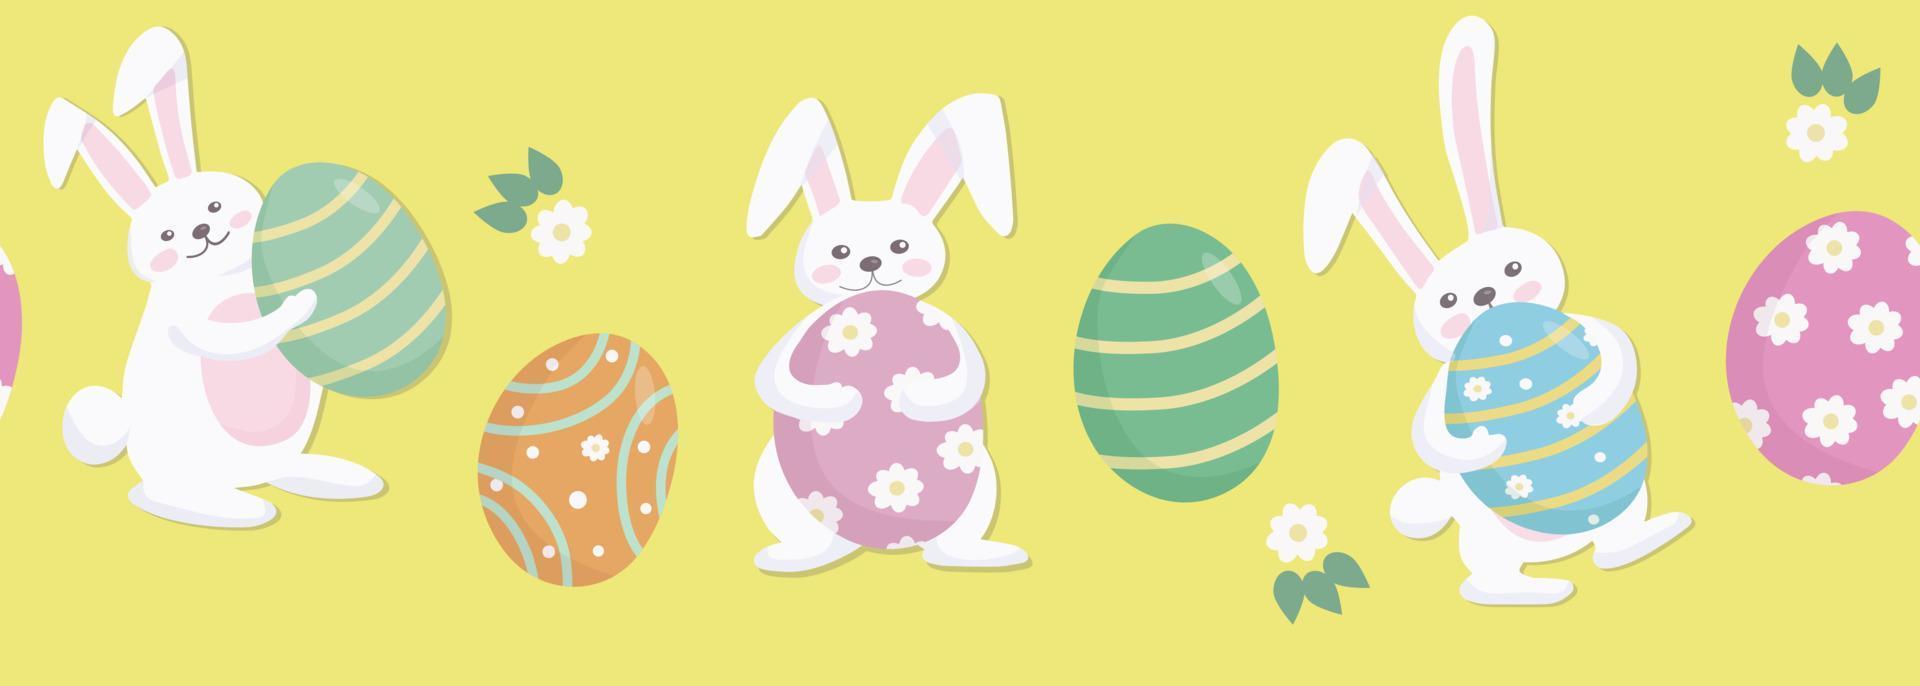 Pasen naadloos horizontaal patroon in pastelkleuren. witte schattige konijntjes met gekleurde beschilderde eieren. op een gele achtergrond. symbolen van de religieuze feestdag van grote pasen vector